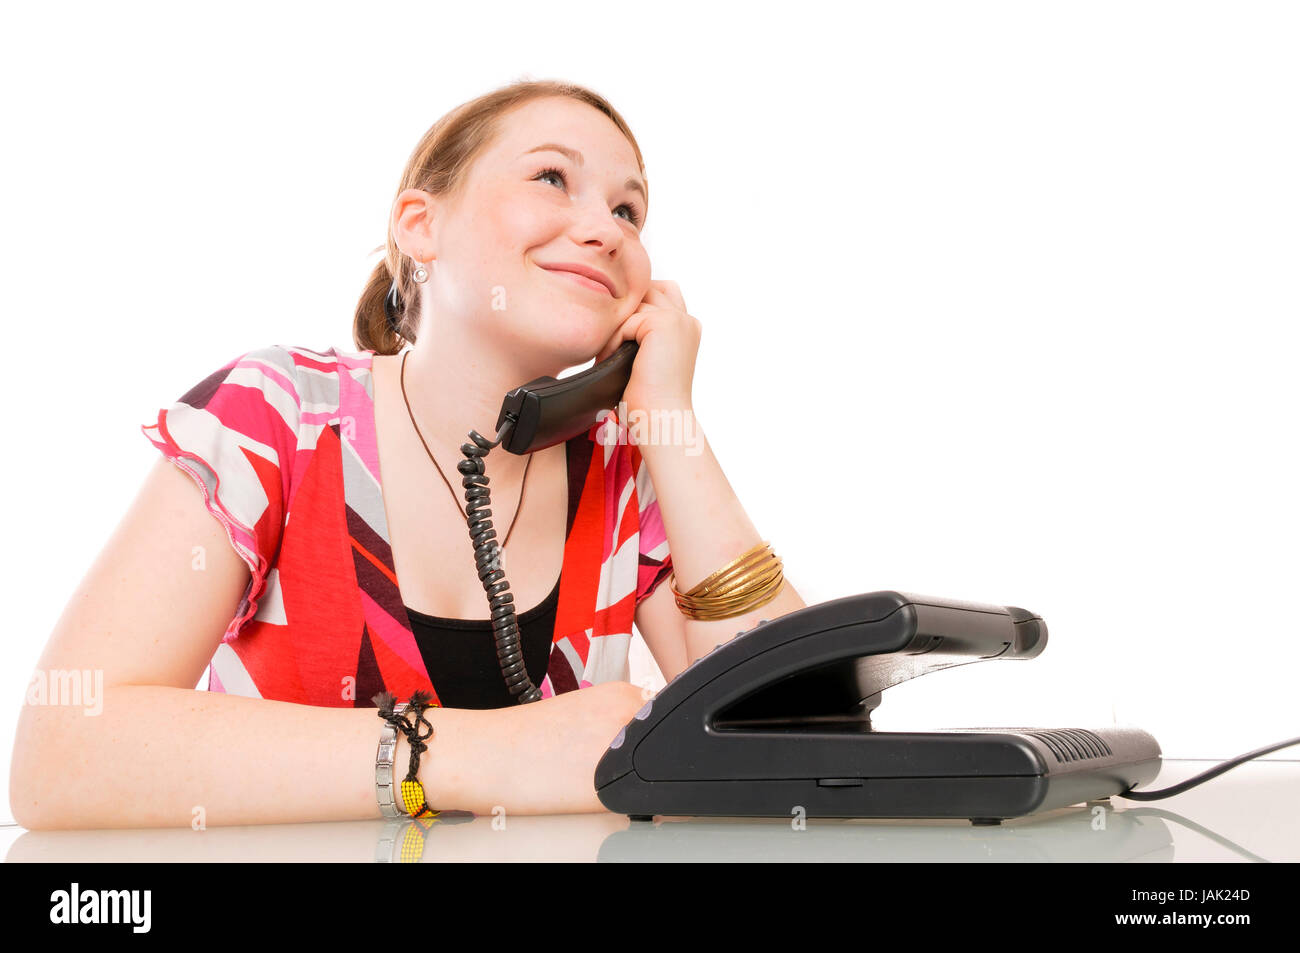 Mädchen, Schülerin telefoniert mit Festnetztelefon vor weißem Hintergrund. Stock Photo